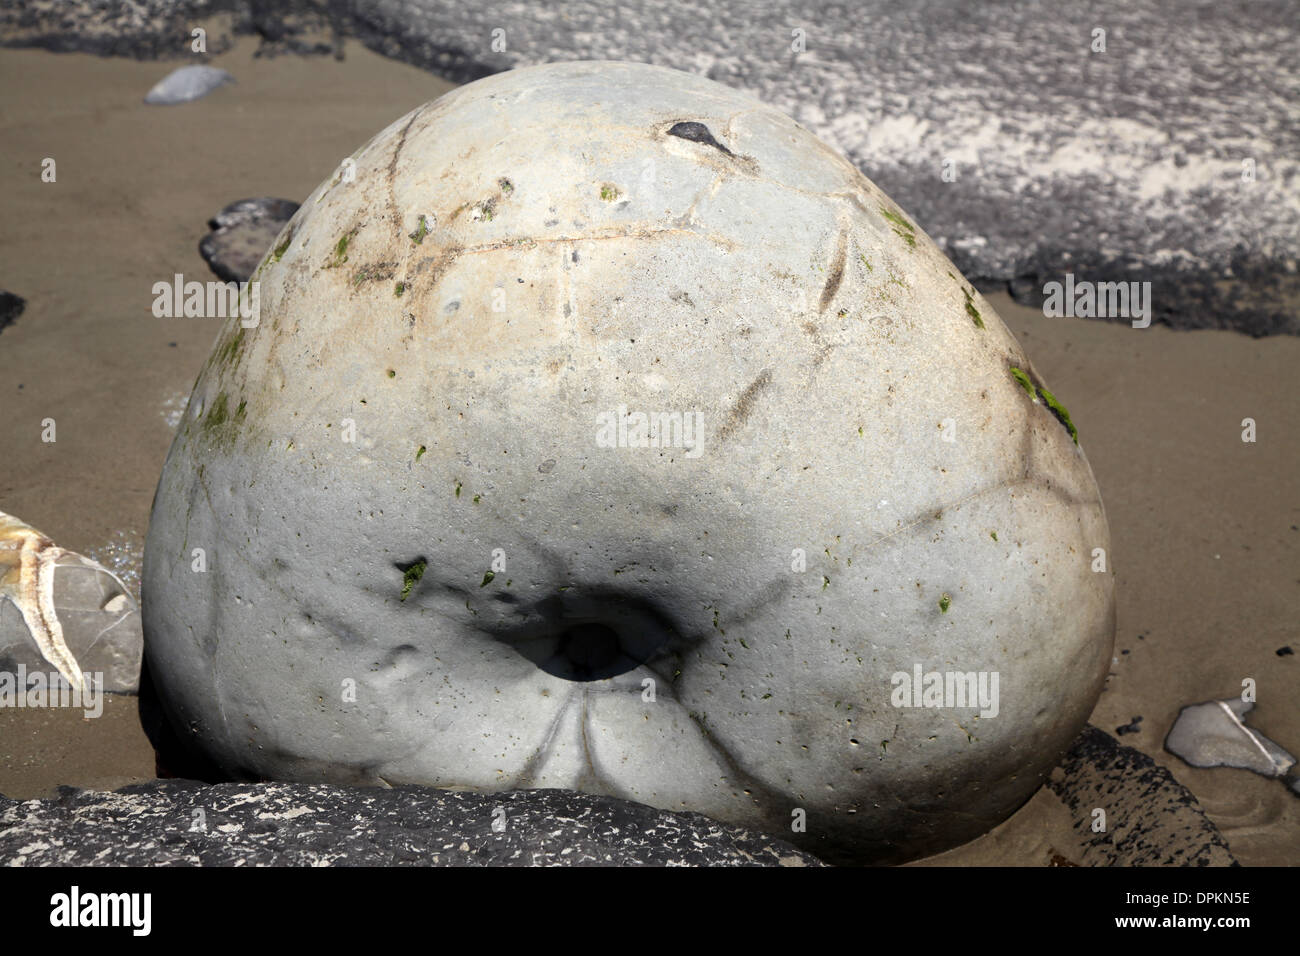 L'un du groupe des bizarreries géologiques laissé sur une plage de Nouvelle-Zélande, ce rocher ressemble à un beignet Banque D'Images